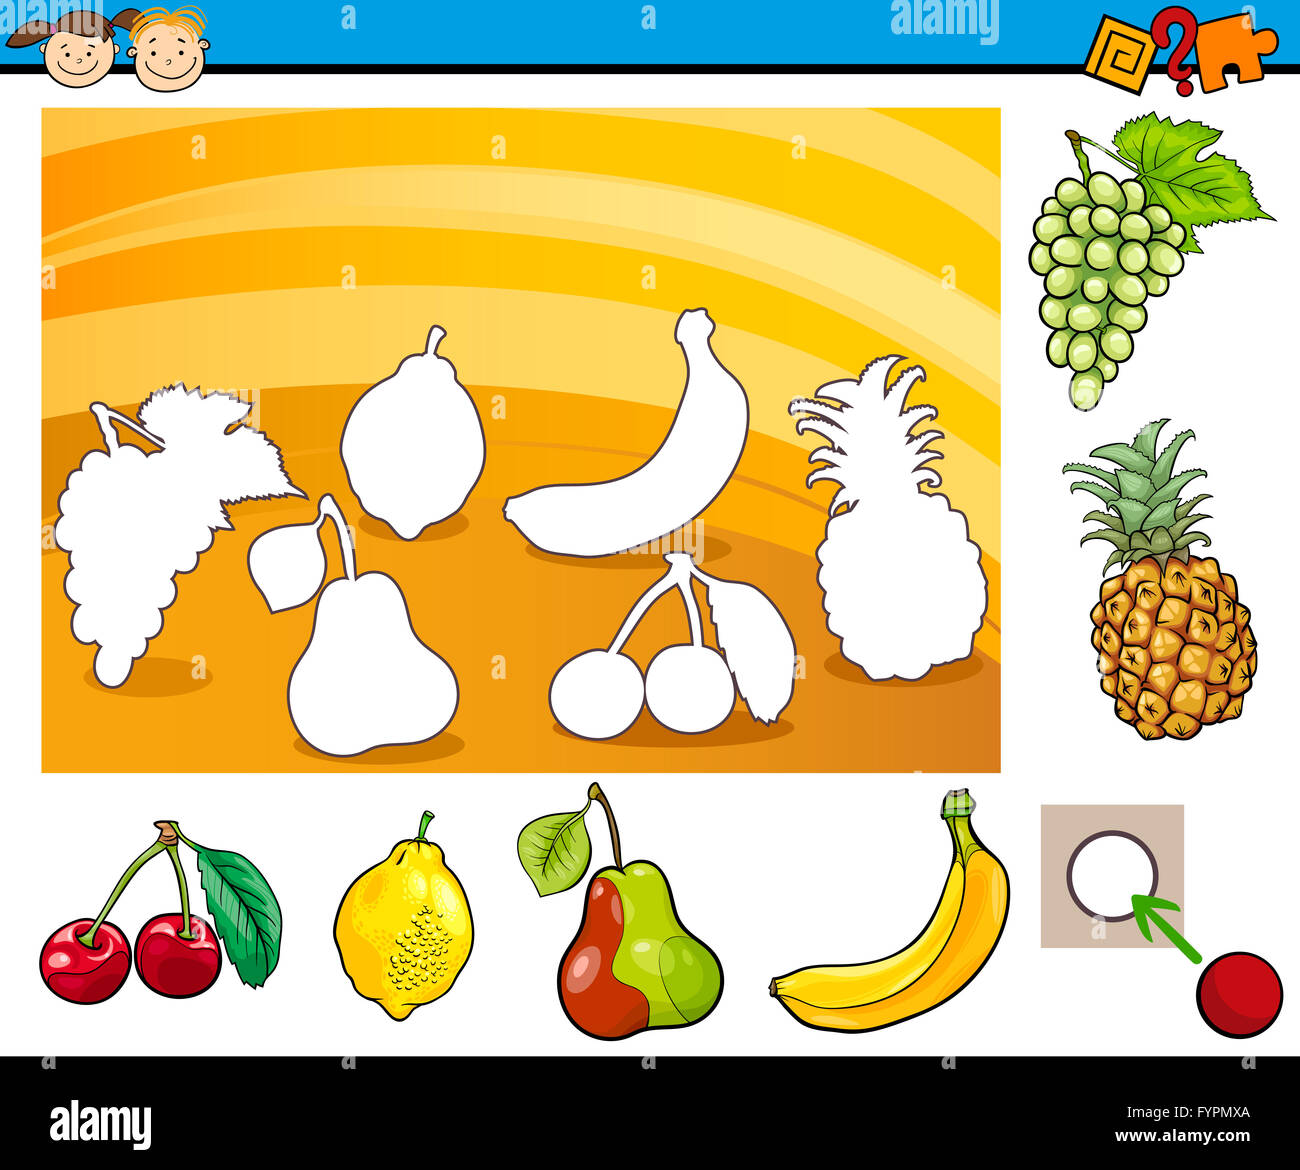 cartoon educational task for children Stock Photo